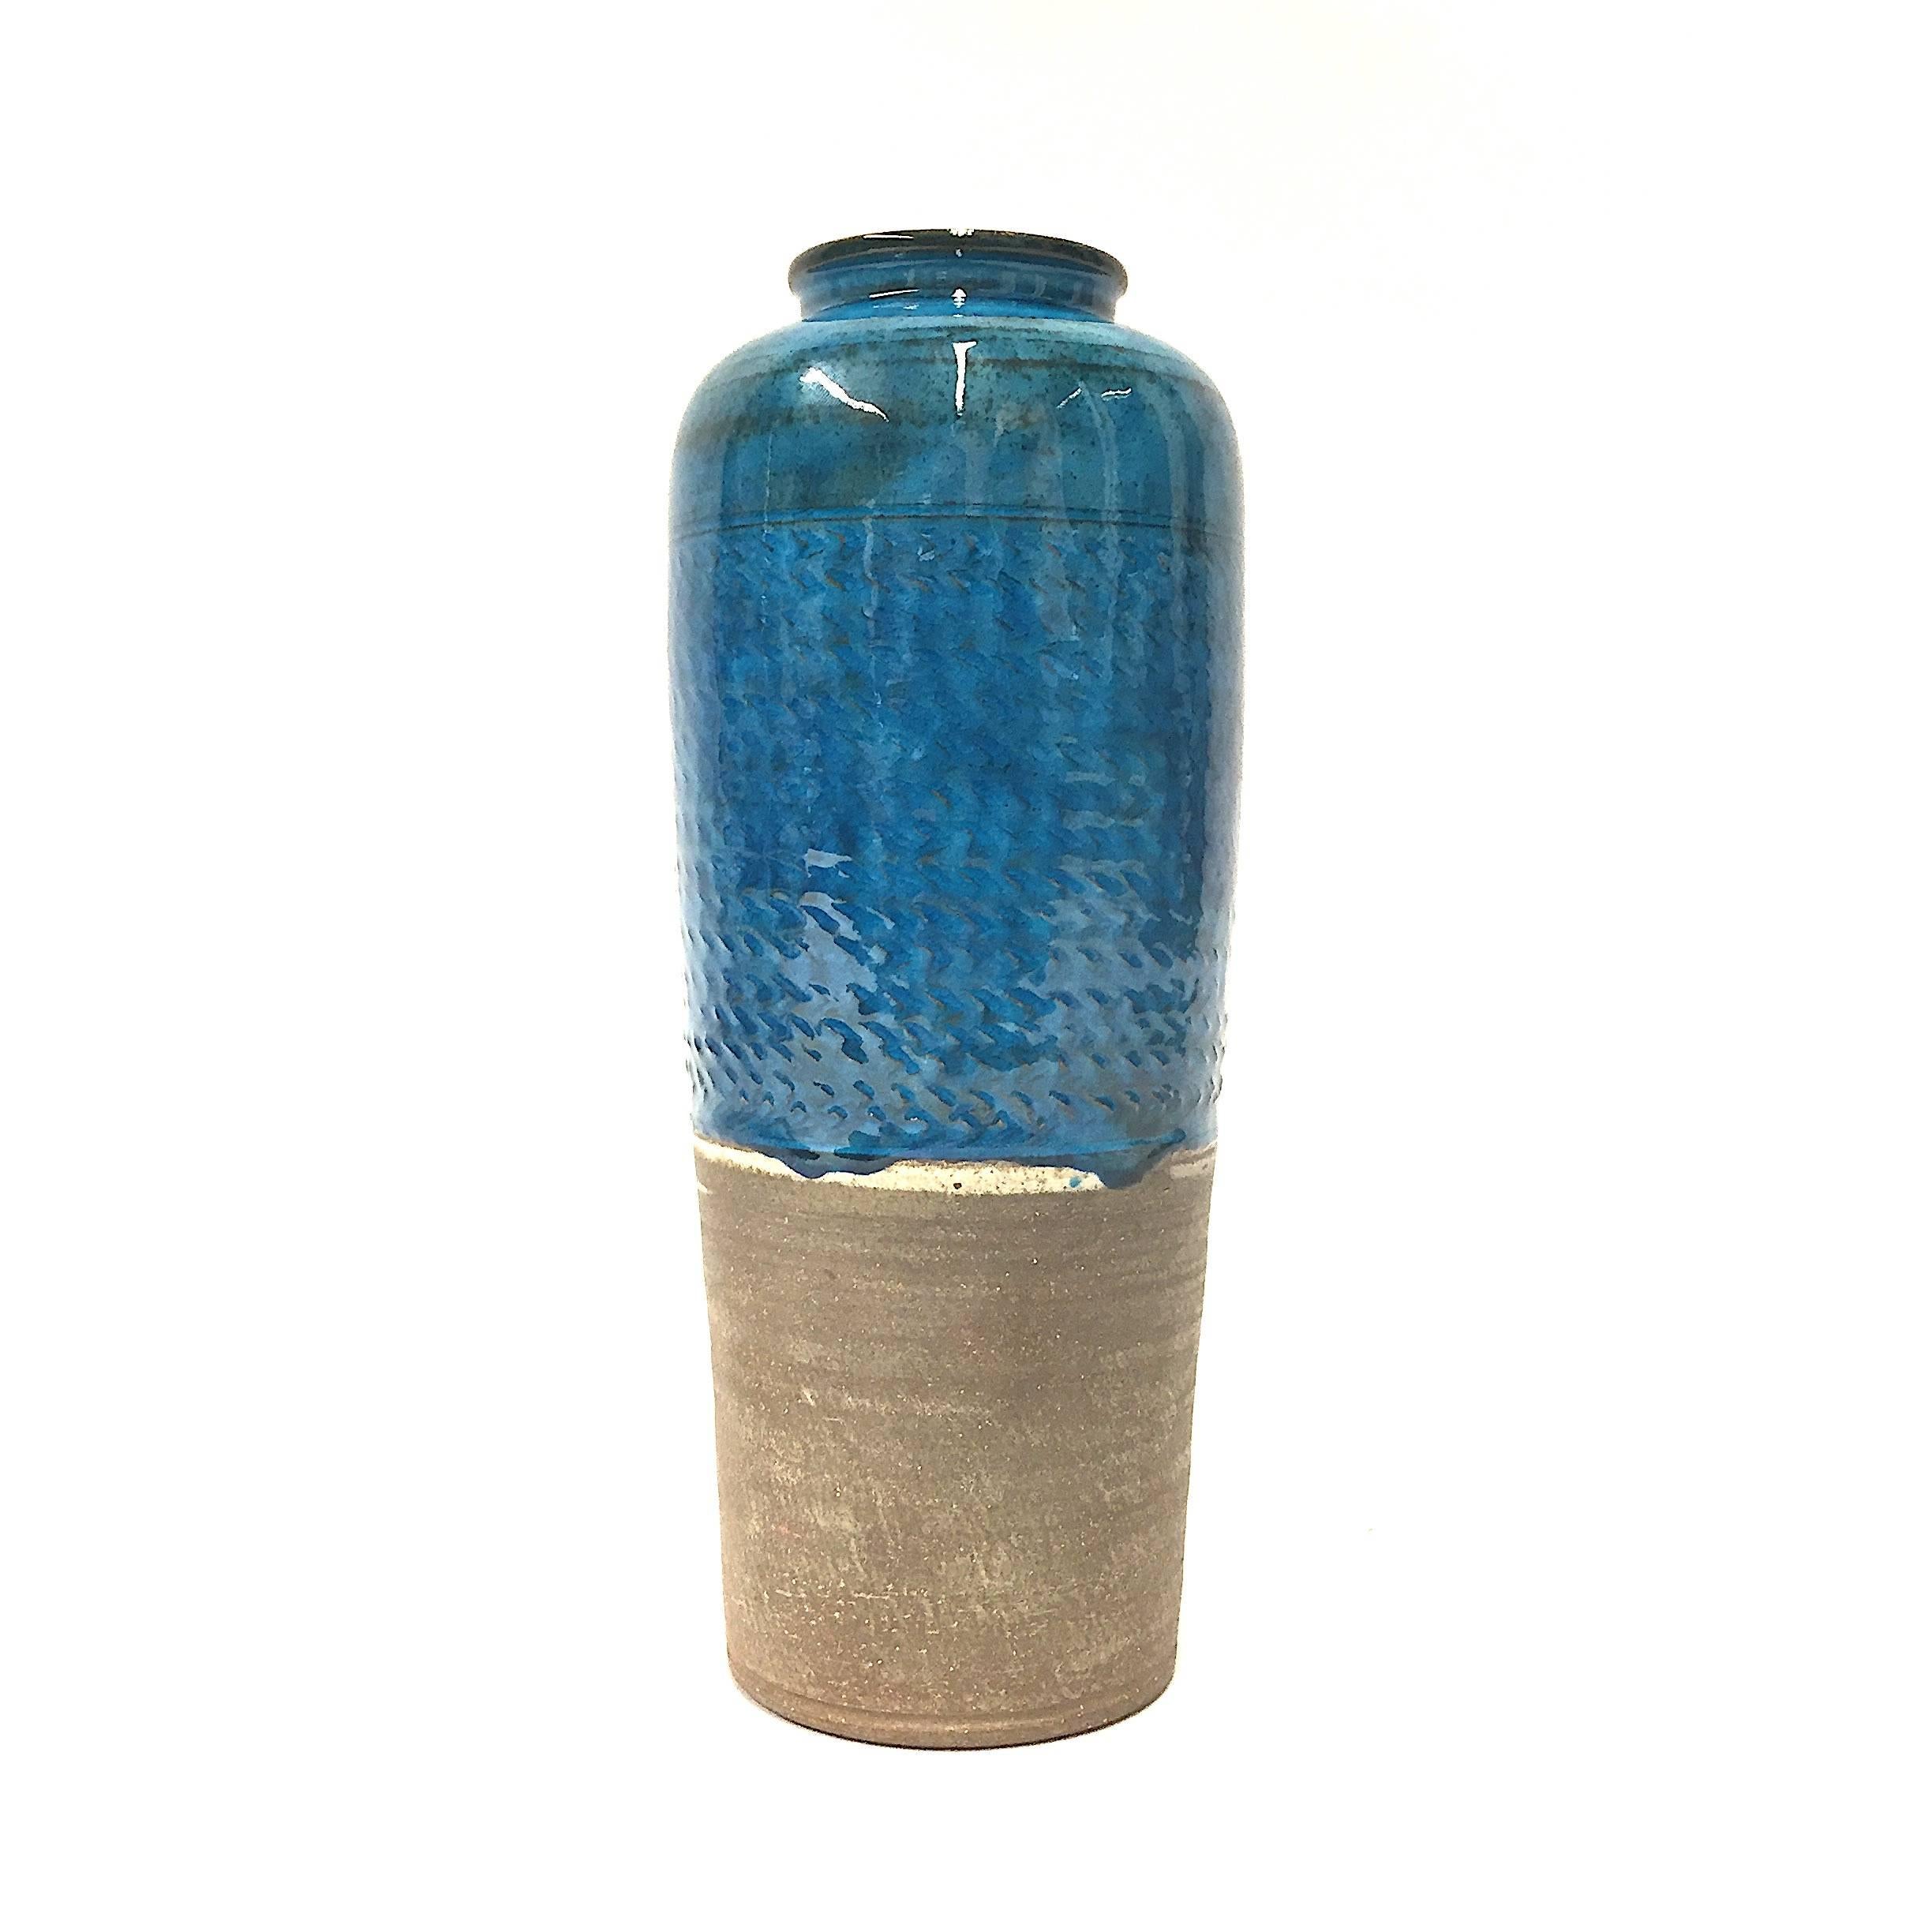 Caribbean blue glaze stoneware table vase by Nils Kahler for Hermann A. Kahler, Denmark. Ceramic. Signed. HAK - Niels - Denmark.